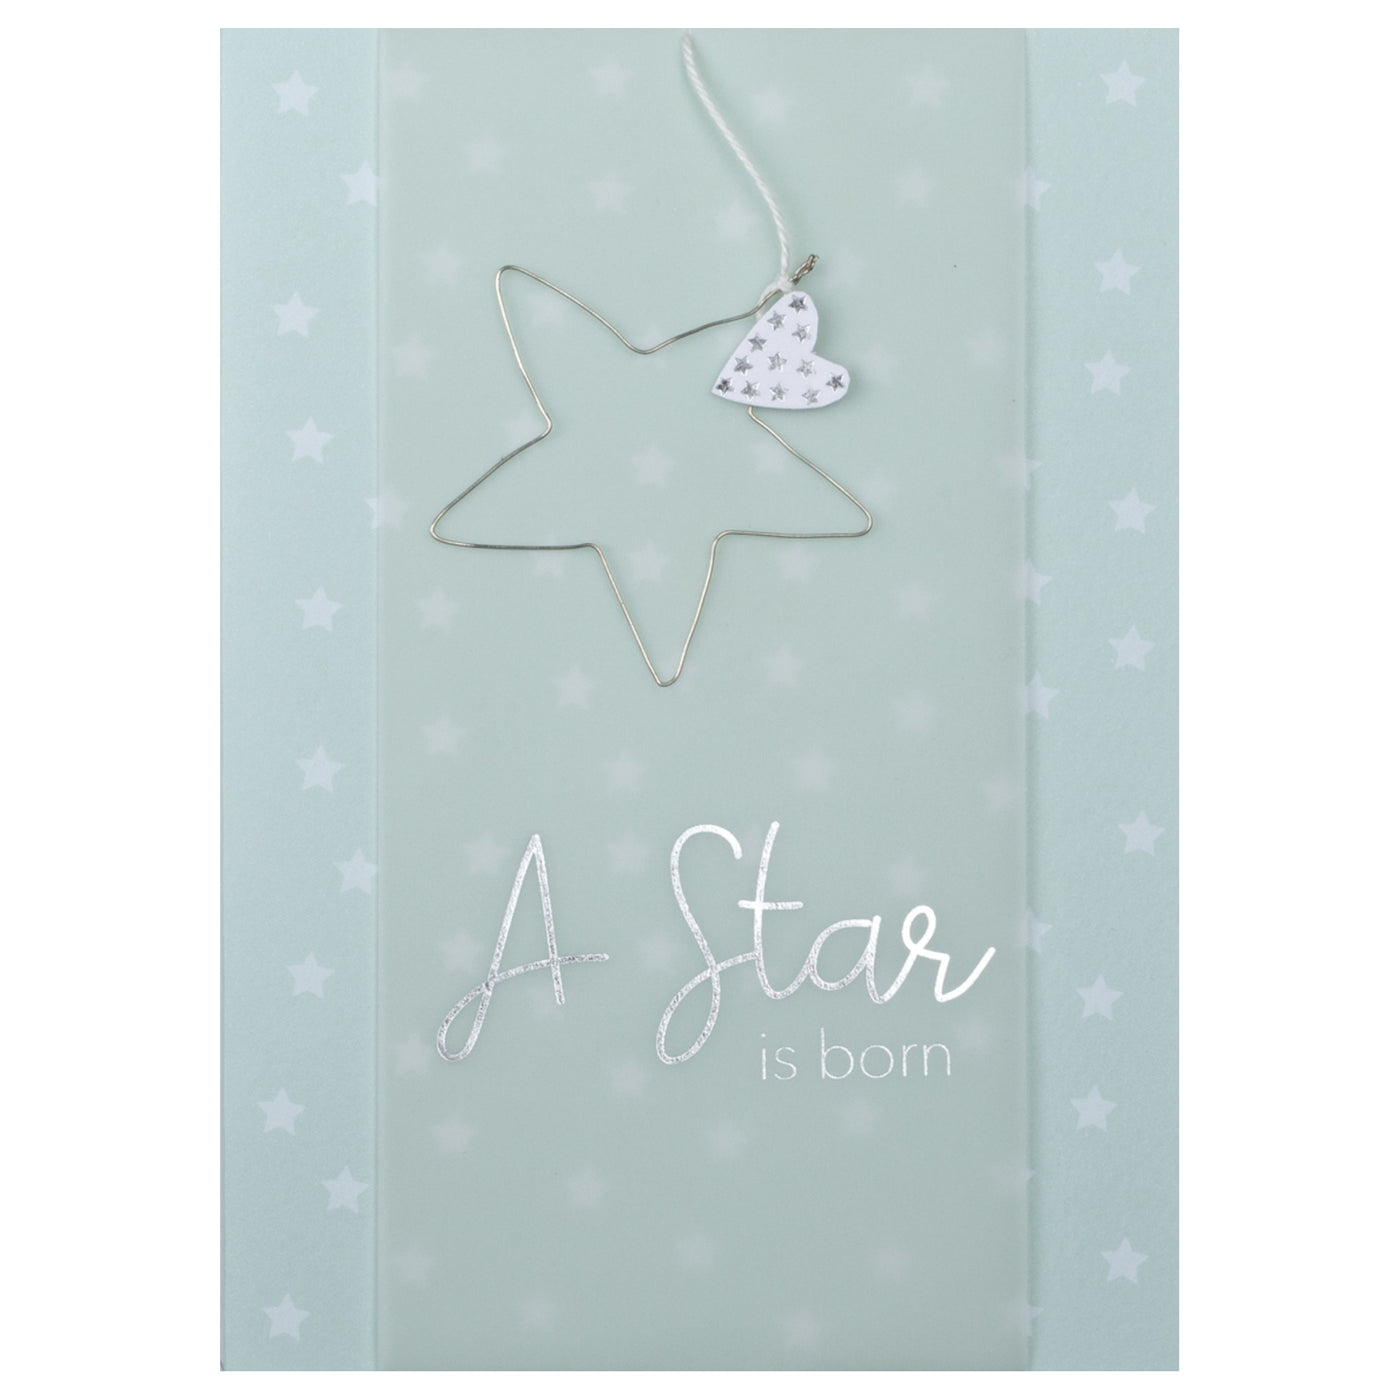 Card "A Star is born"